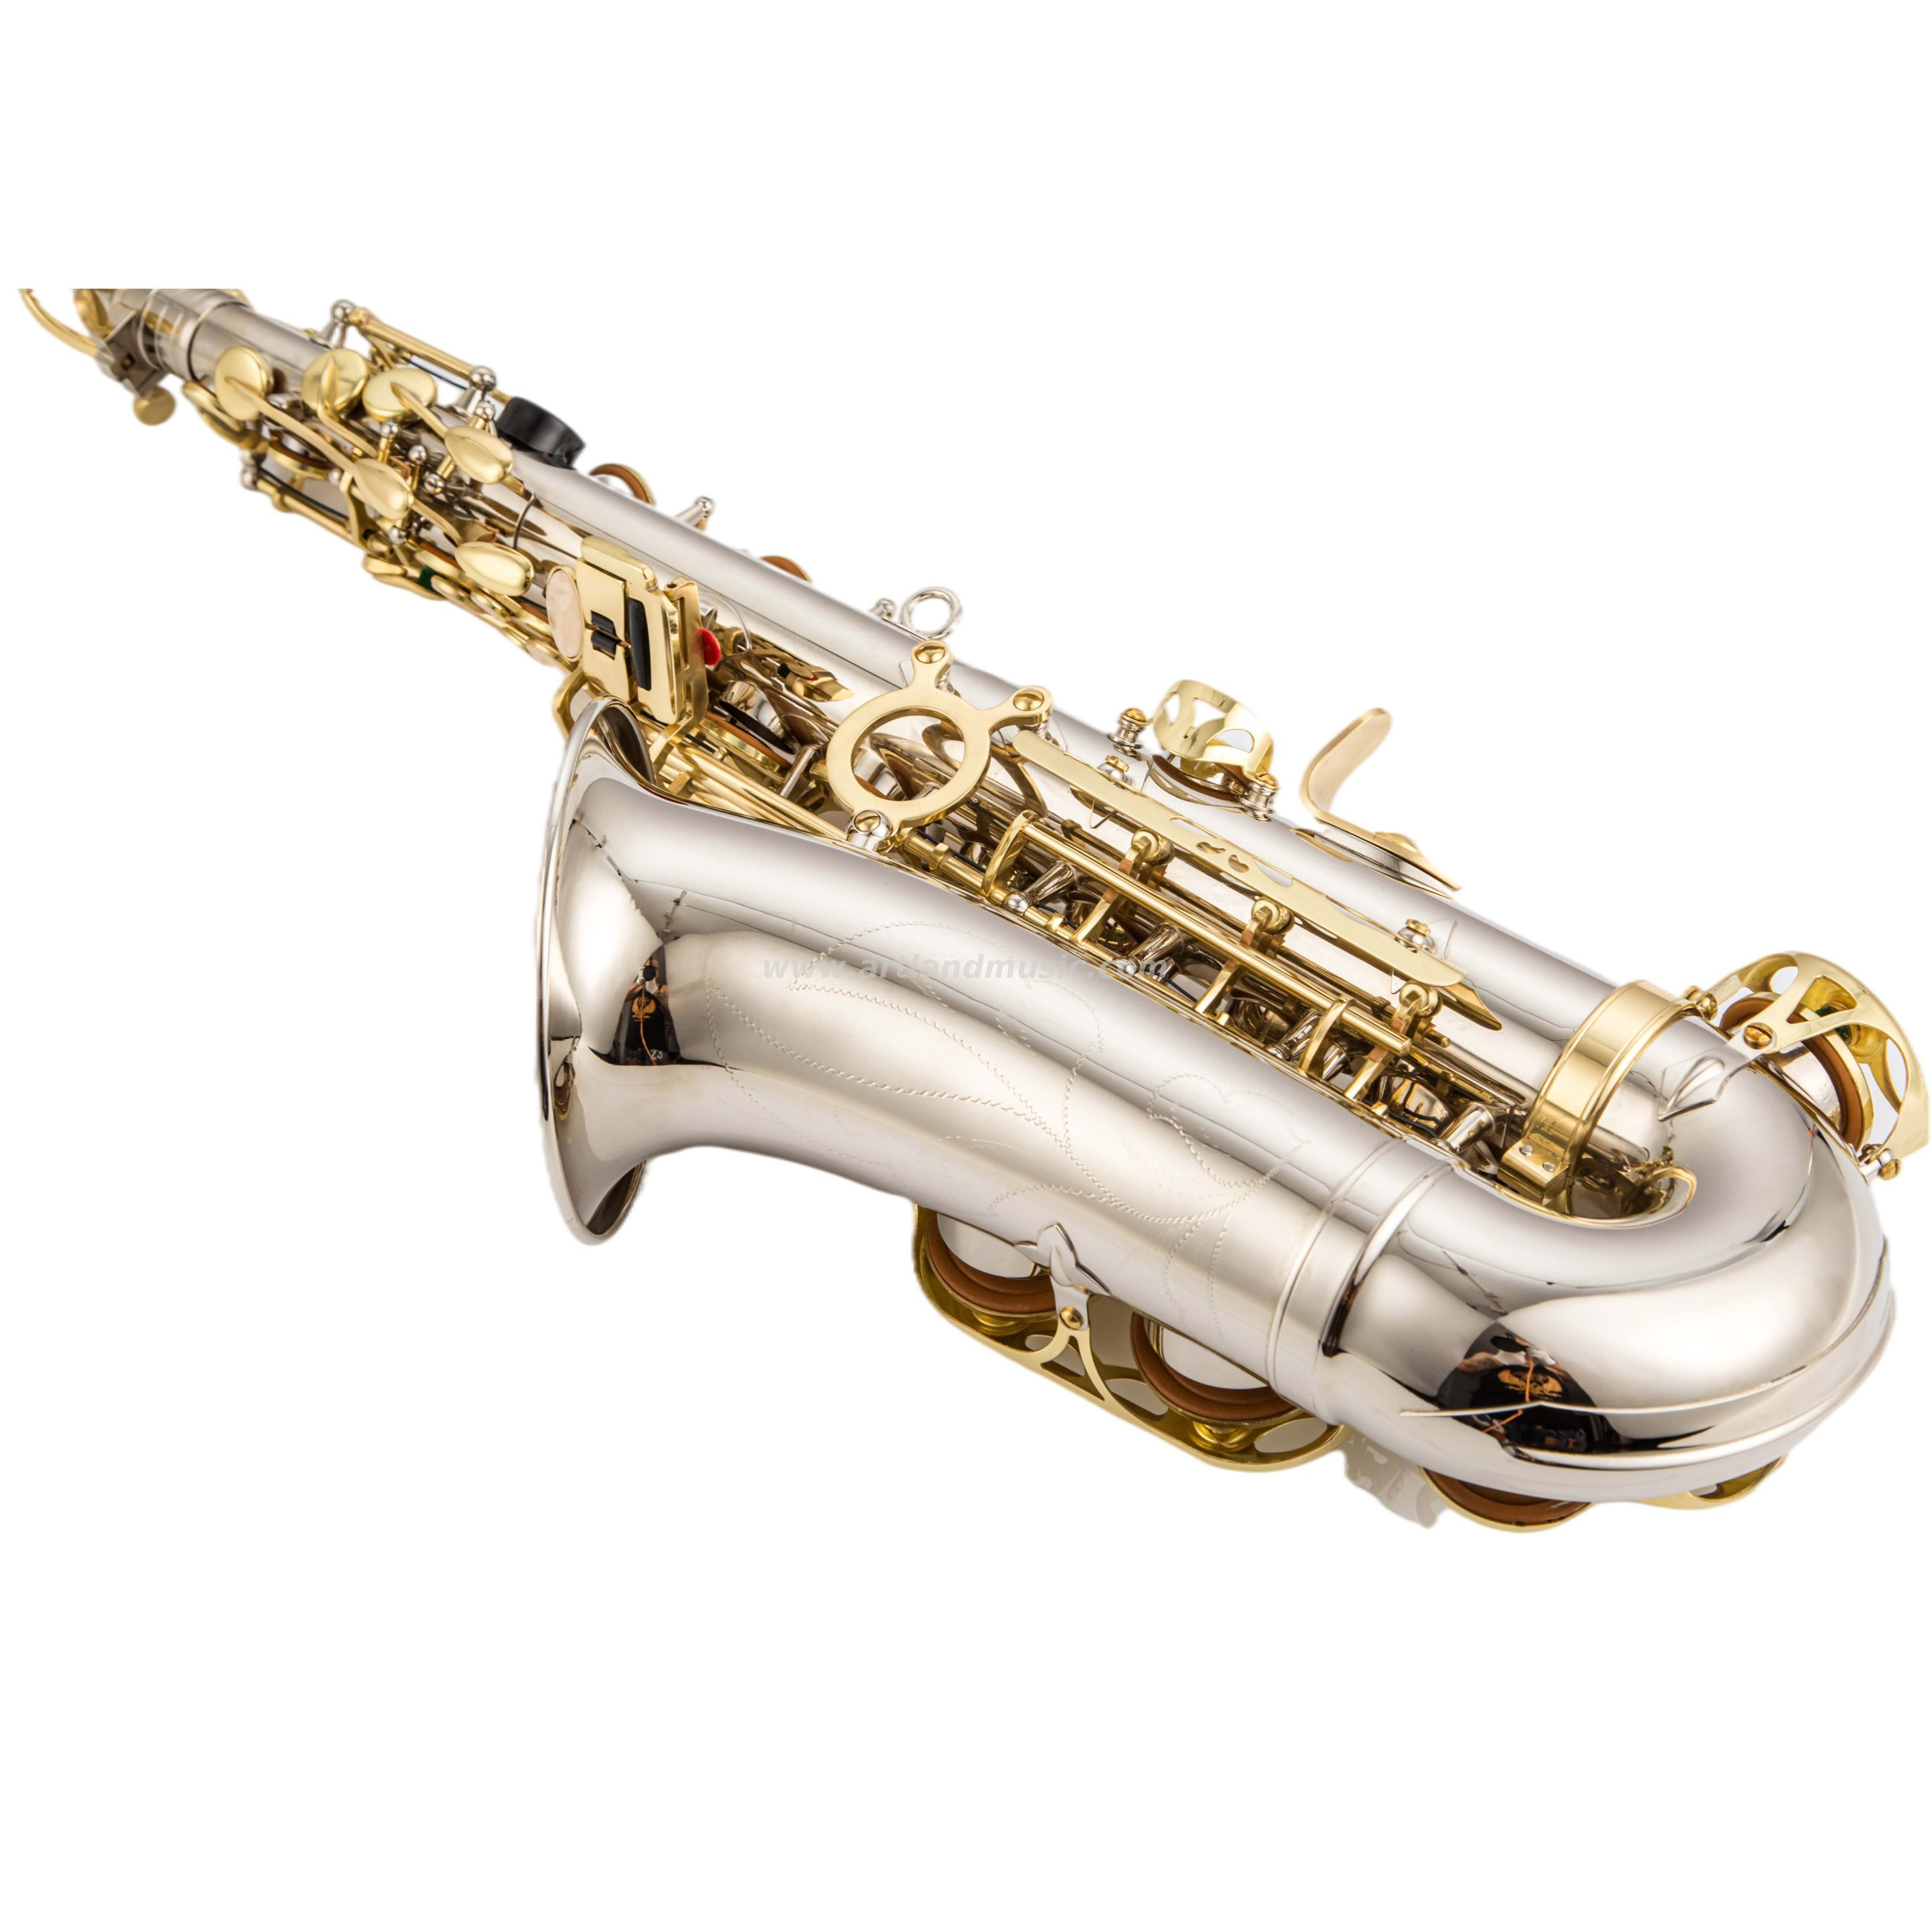 Níquel terminado alto saxofón con llave de oro (AAS5505NL)